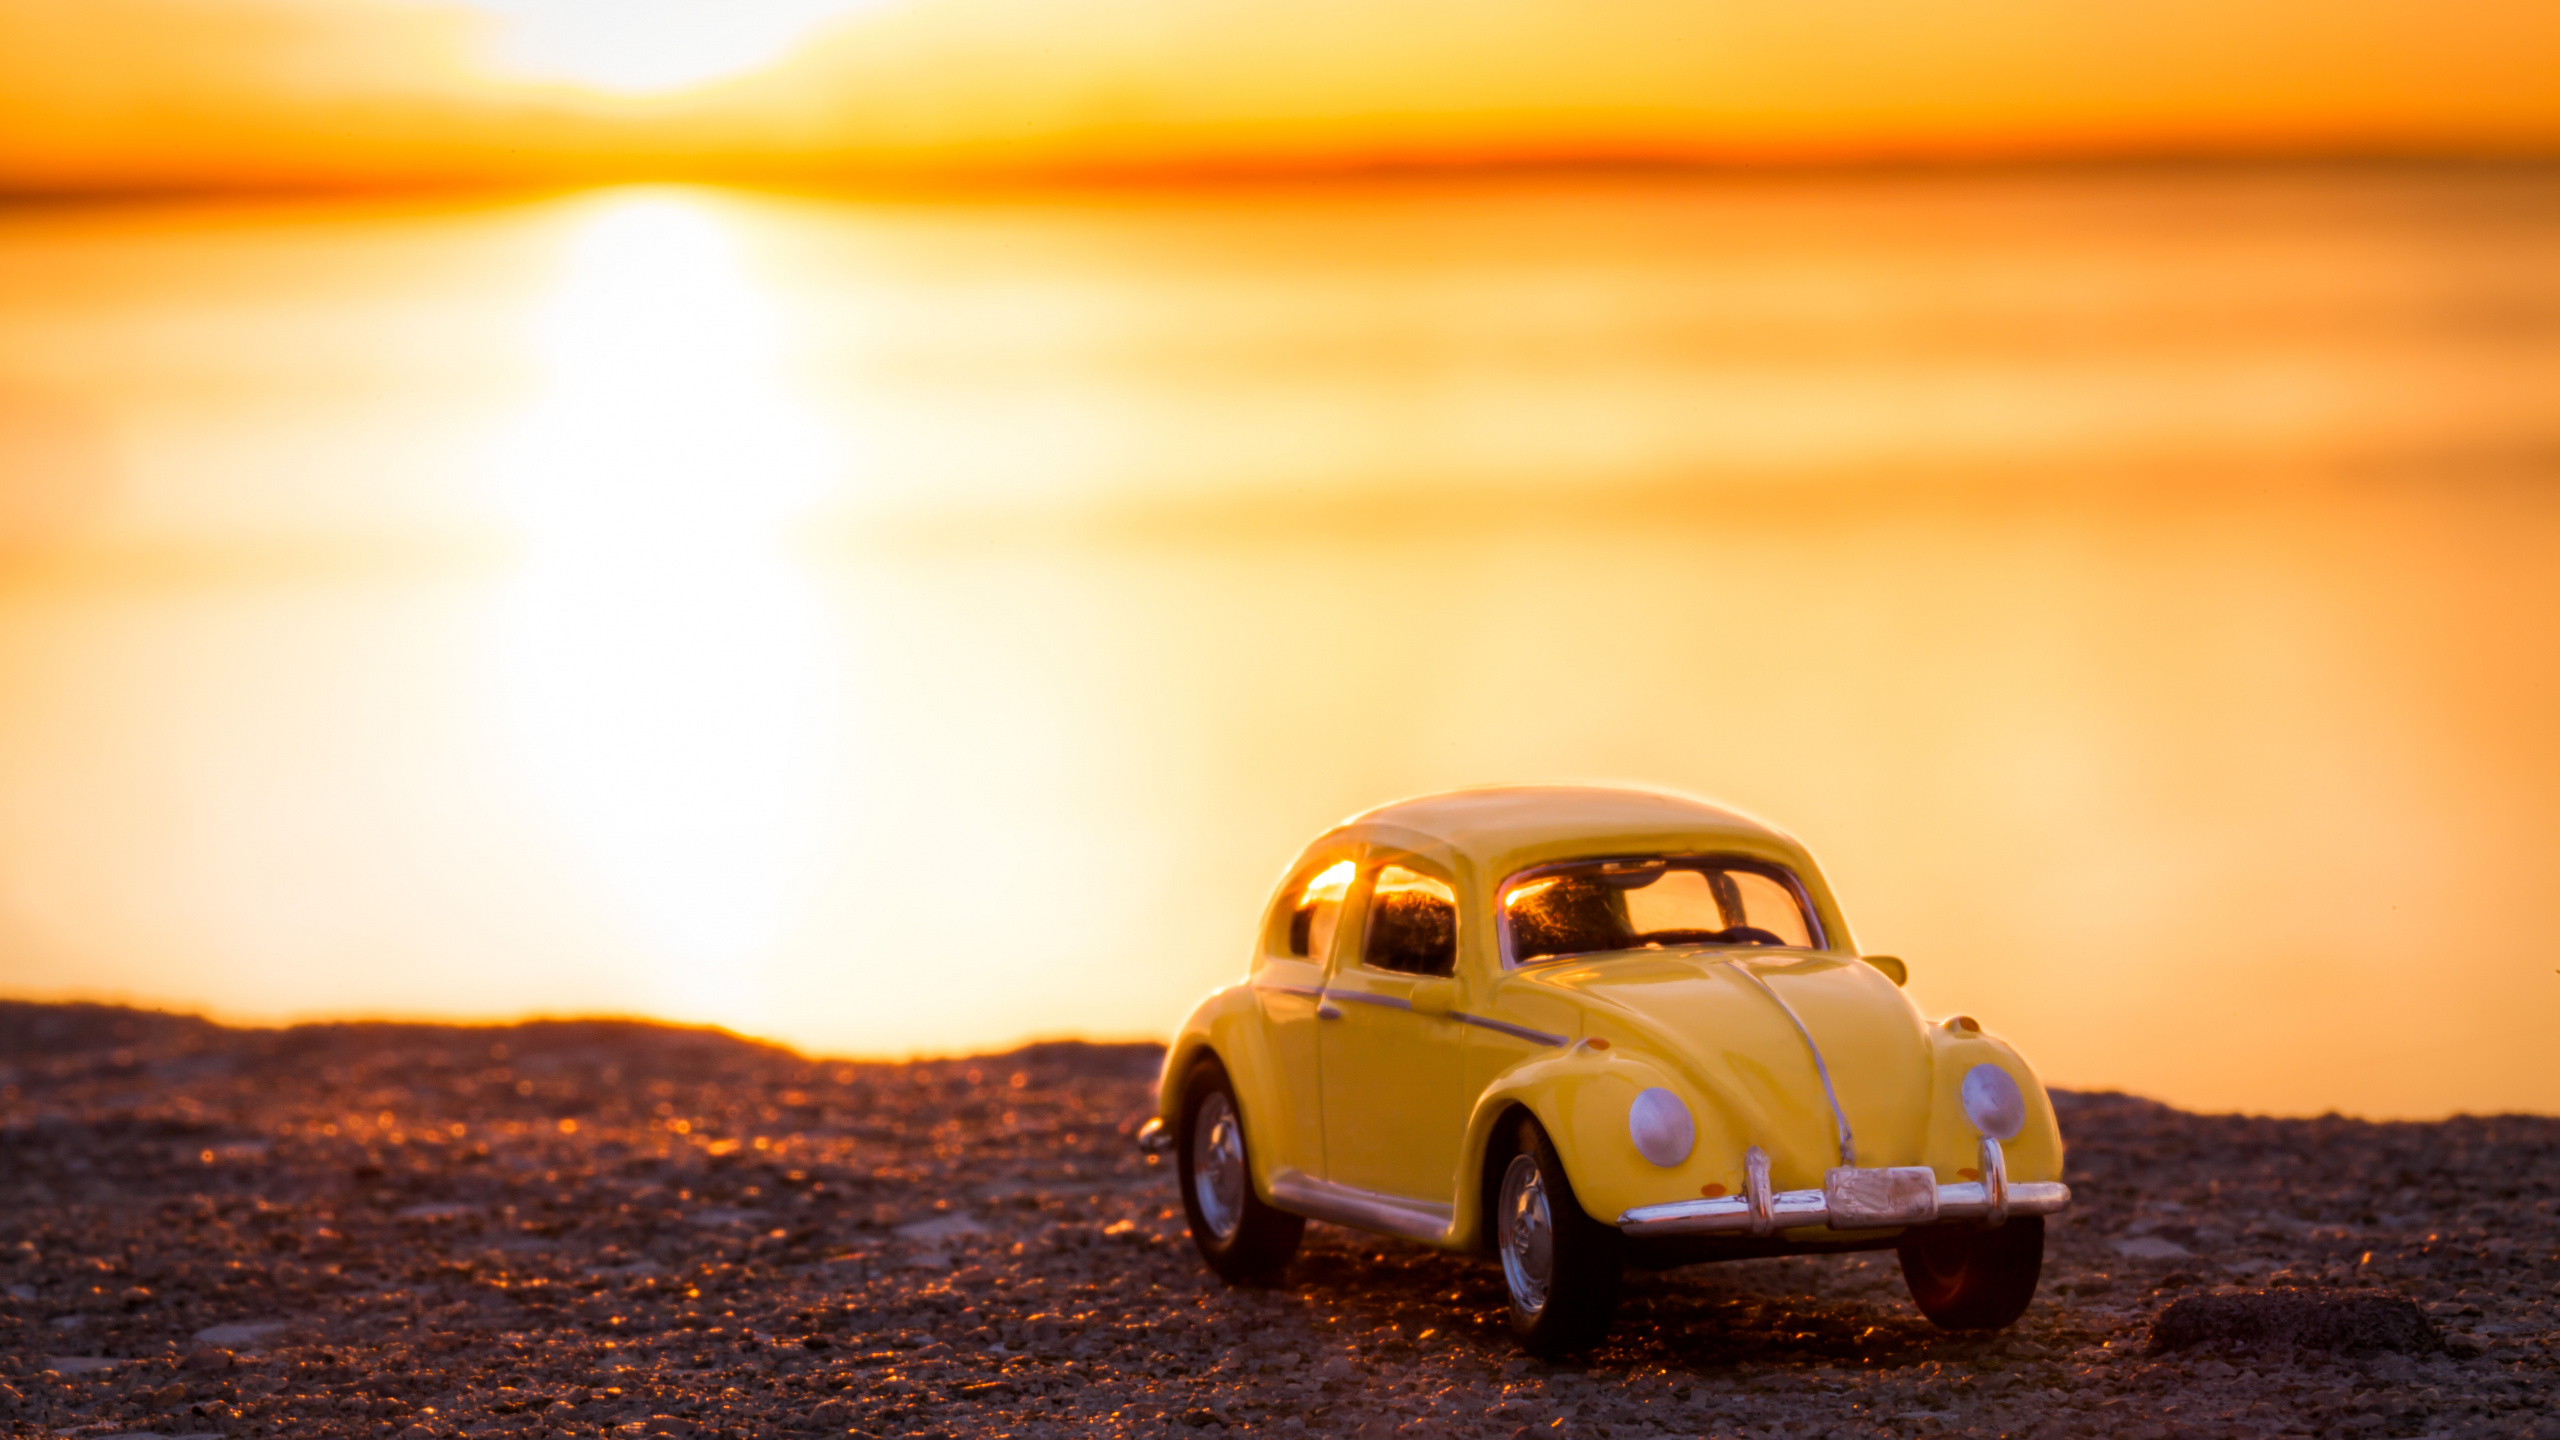 Volkswagen Beetle Amarillo en la Orilla Durante la Puesta de Sol. Wallpaper in 2560x1440 Resolution